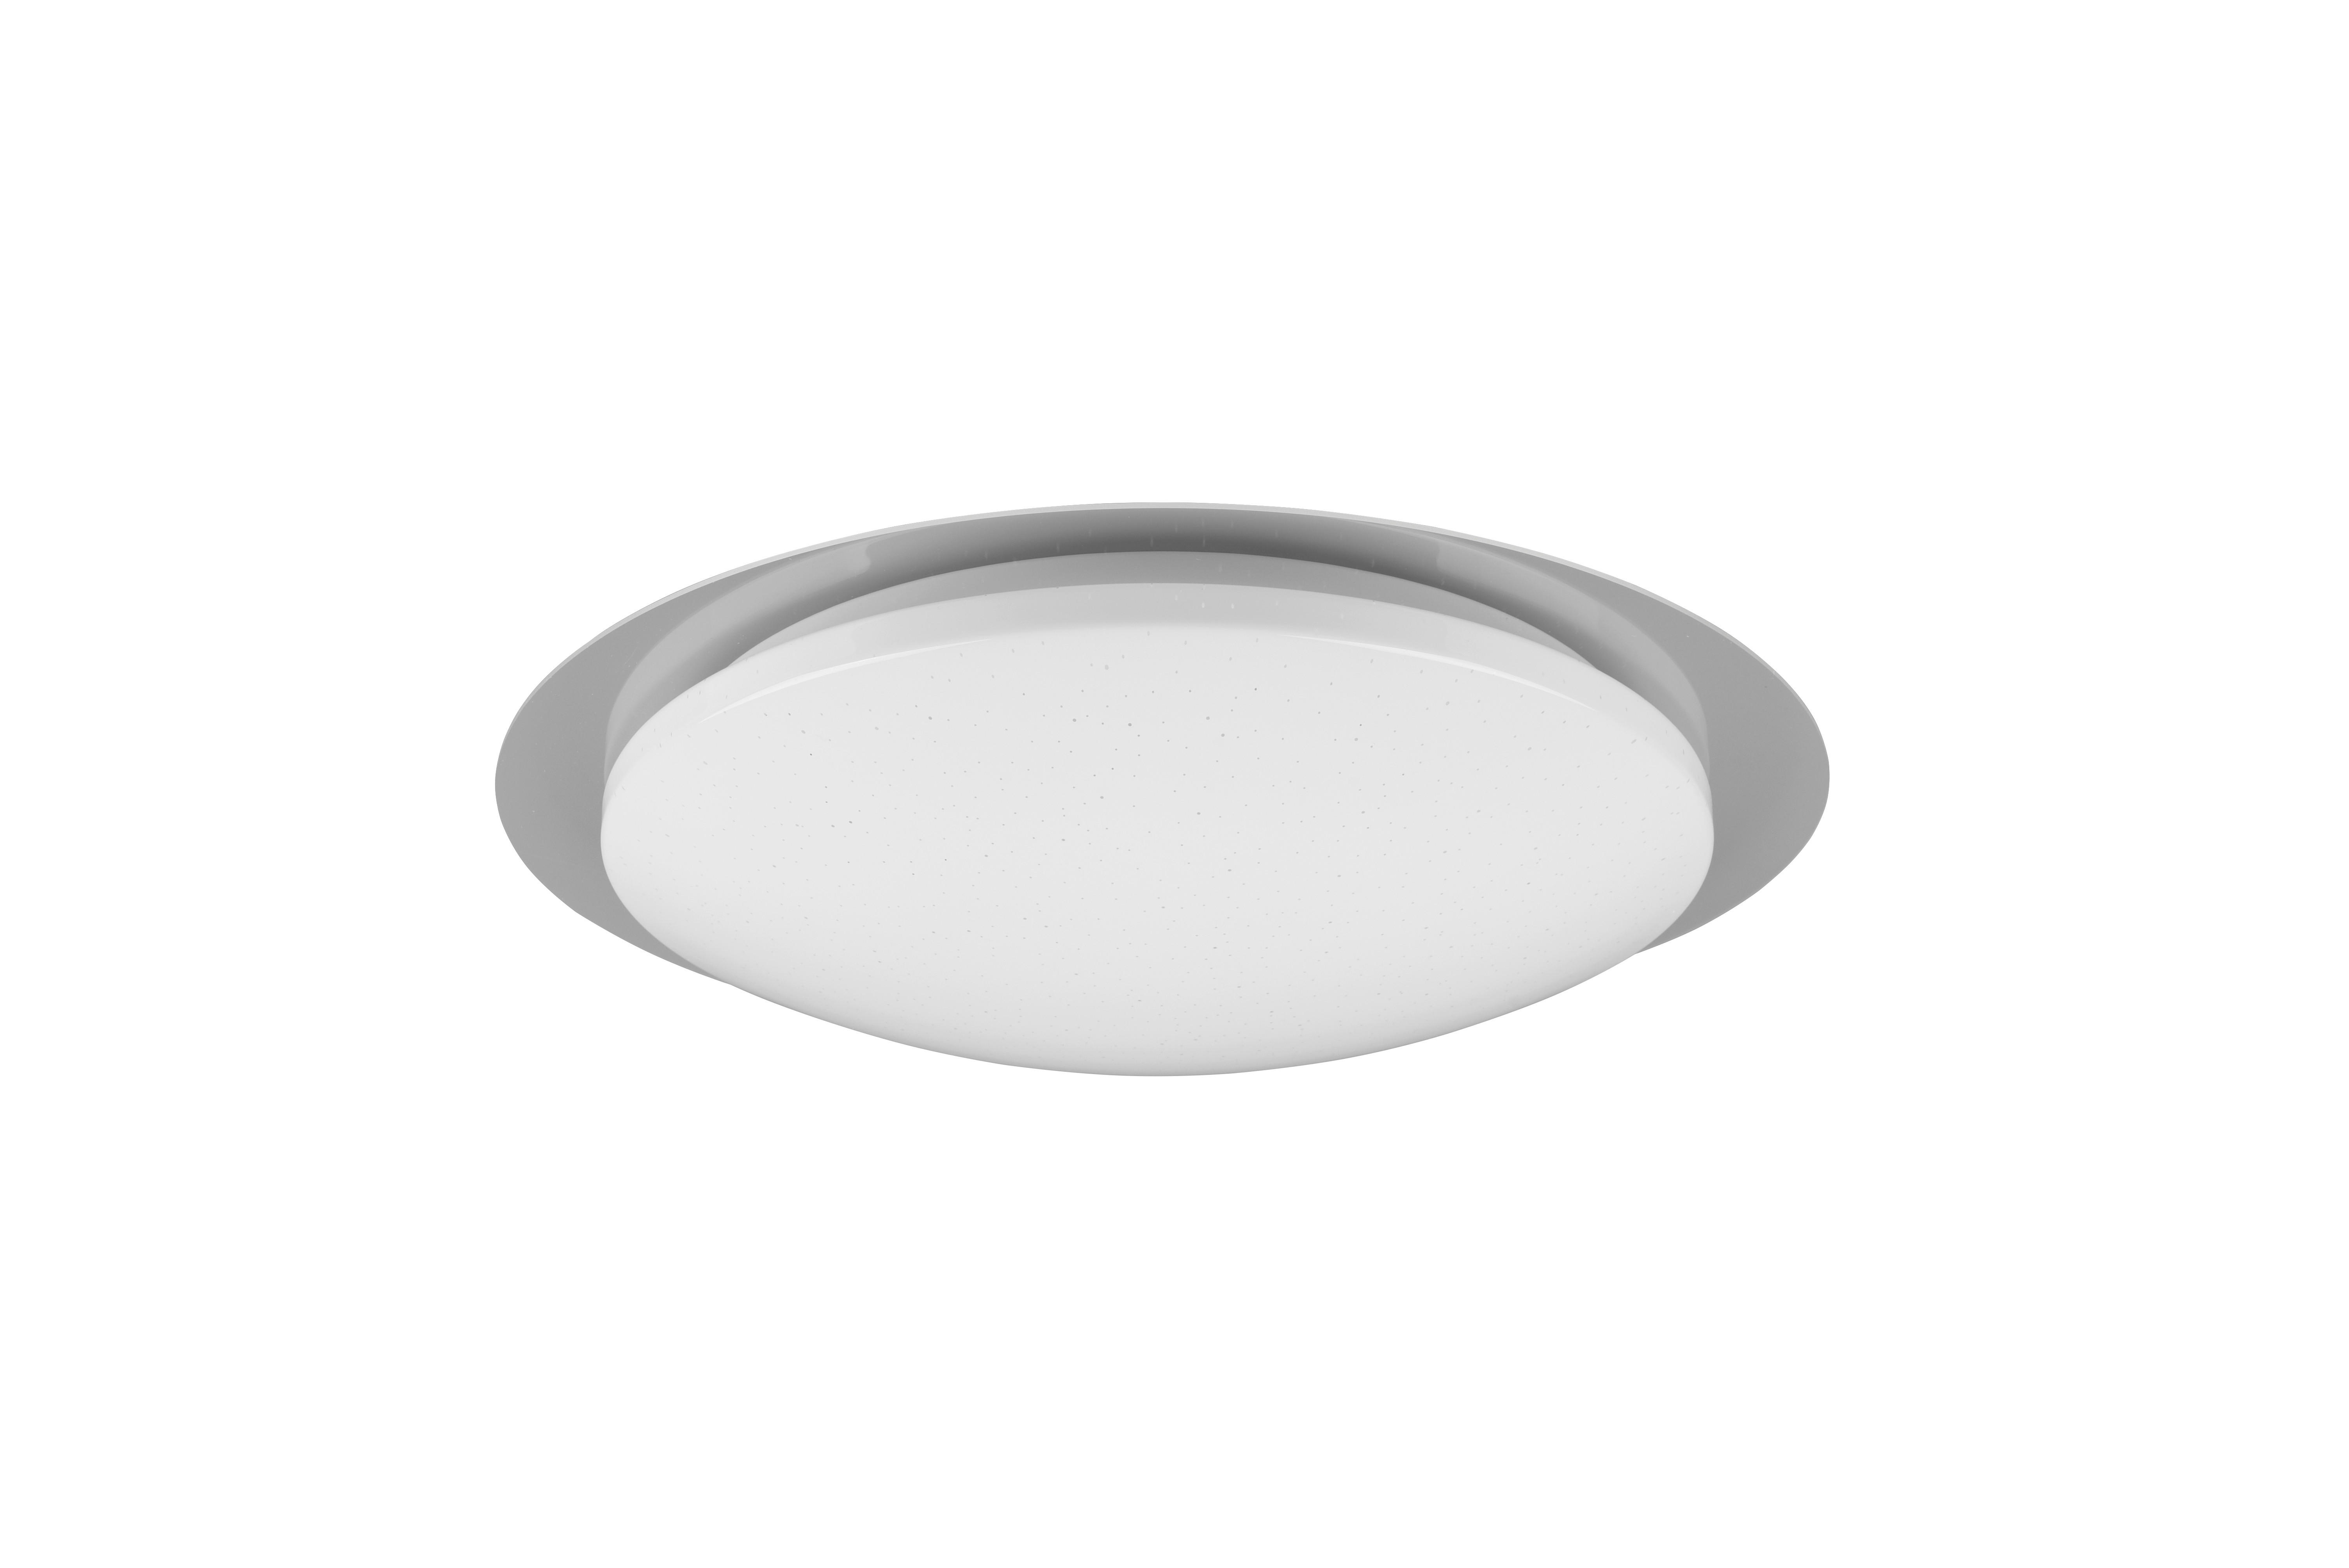 LED-DECKENLEUCHTE 48/10,2 cm   - Weiß, Basics, Kunststoff (48/10,2cm) - Trio Leuchten